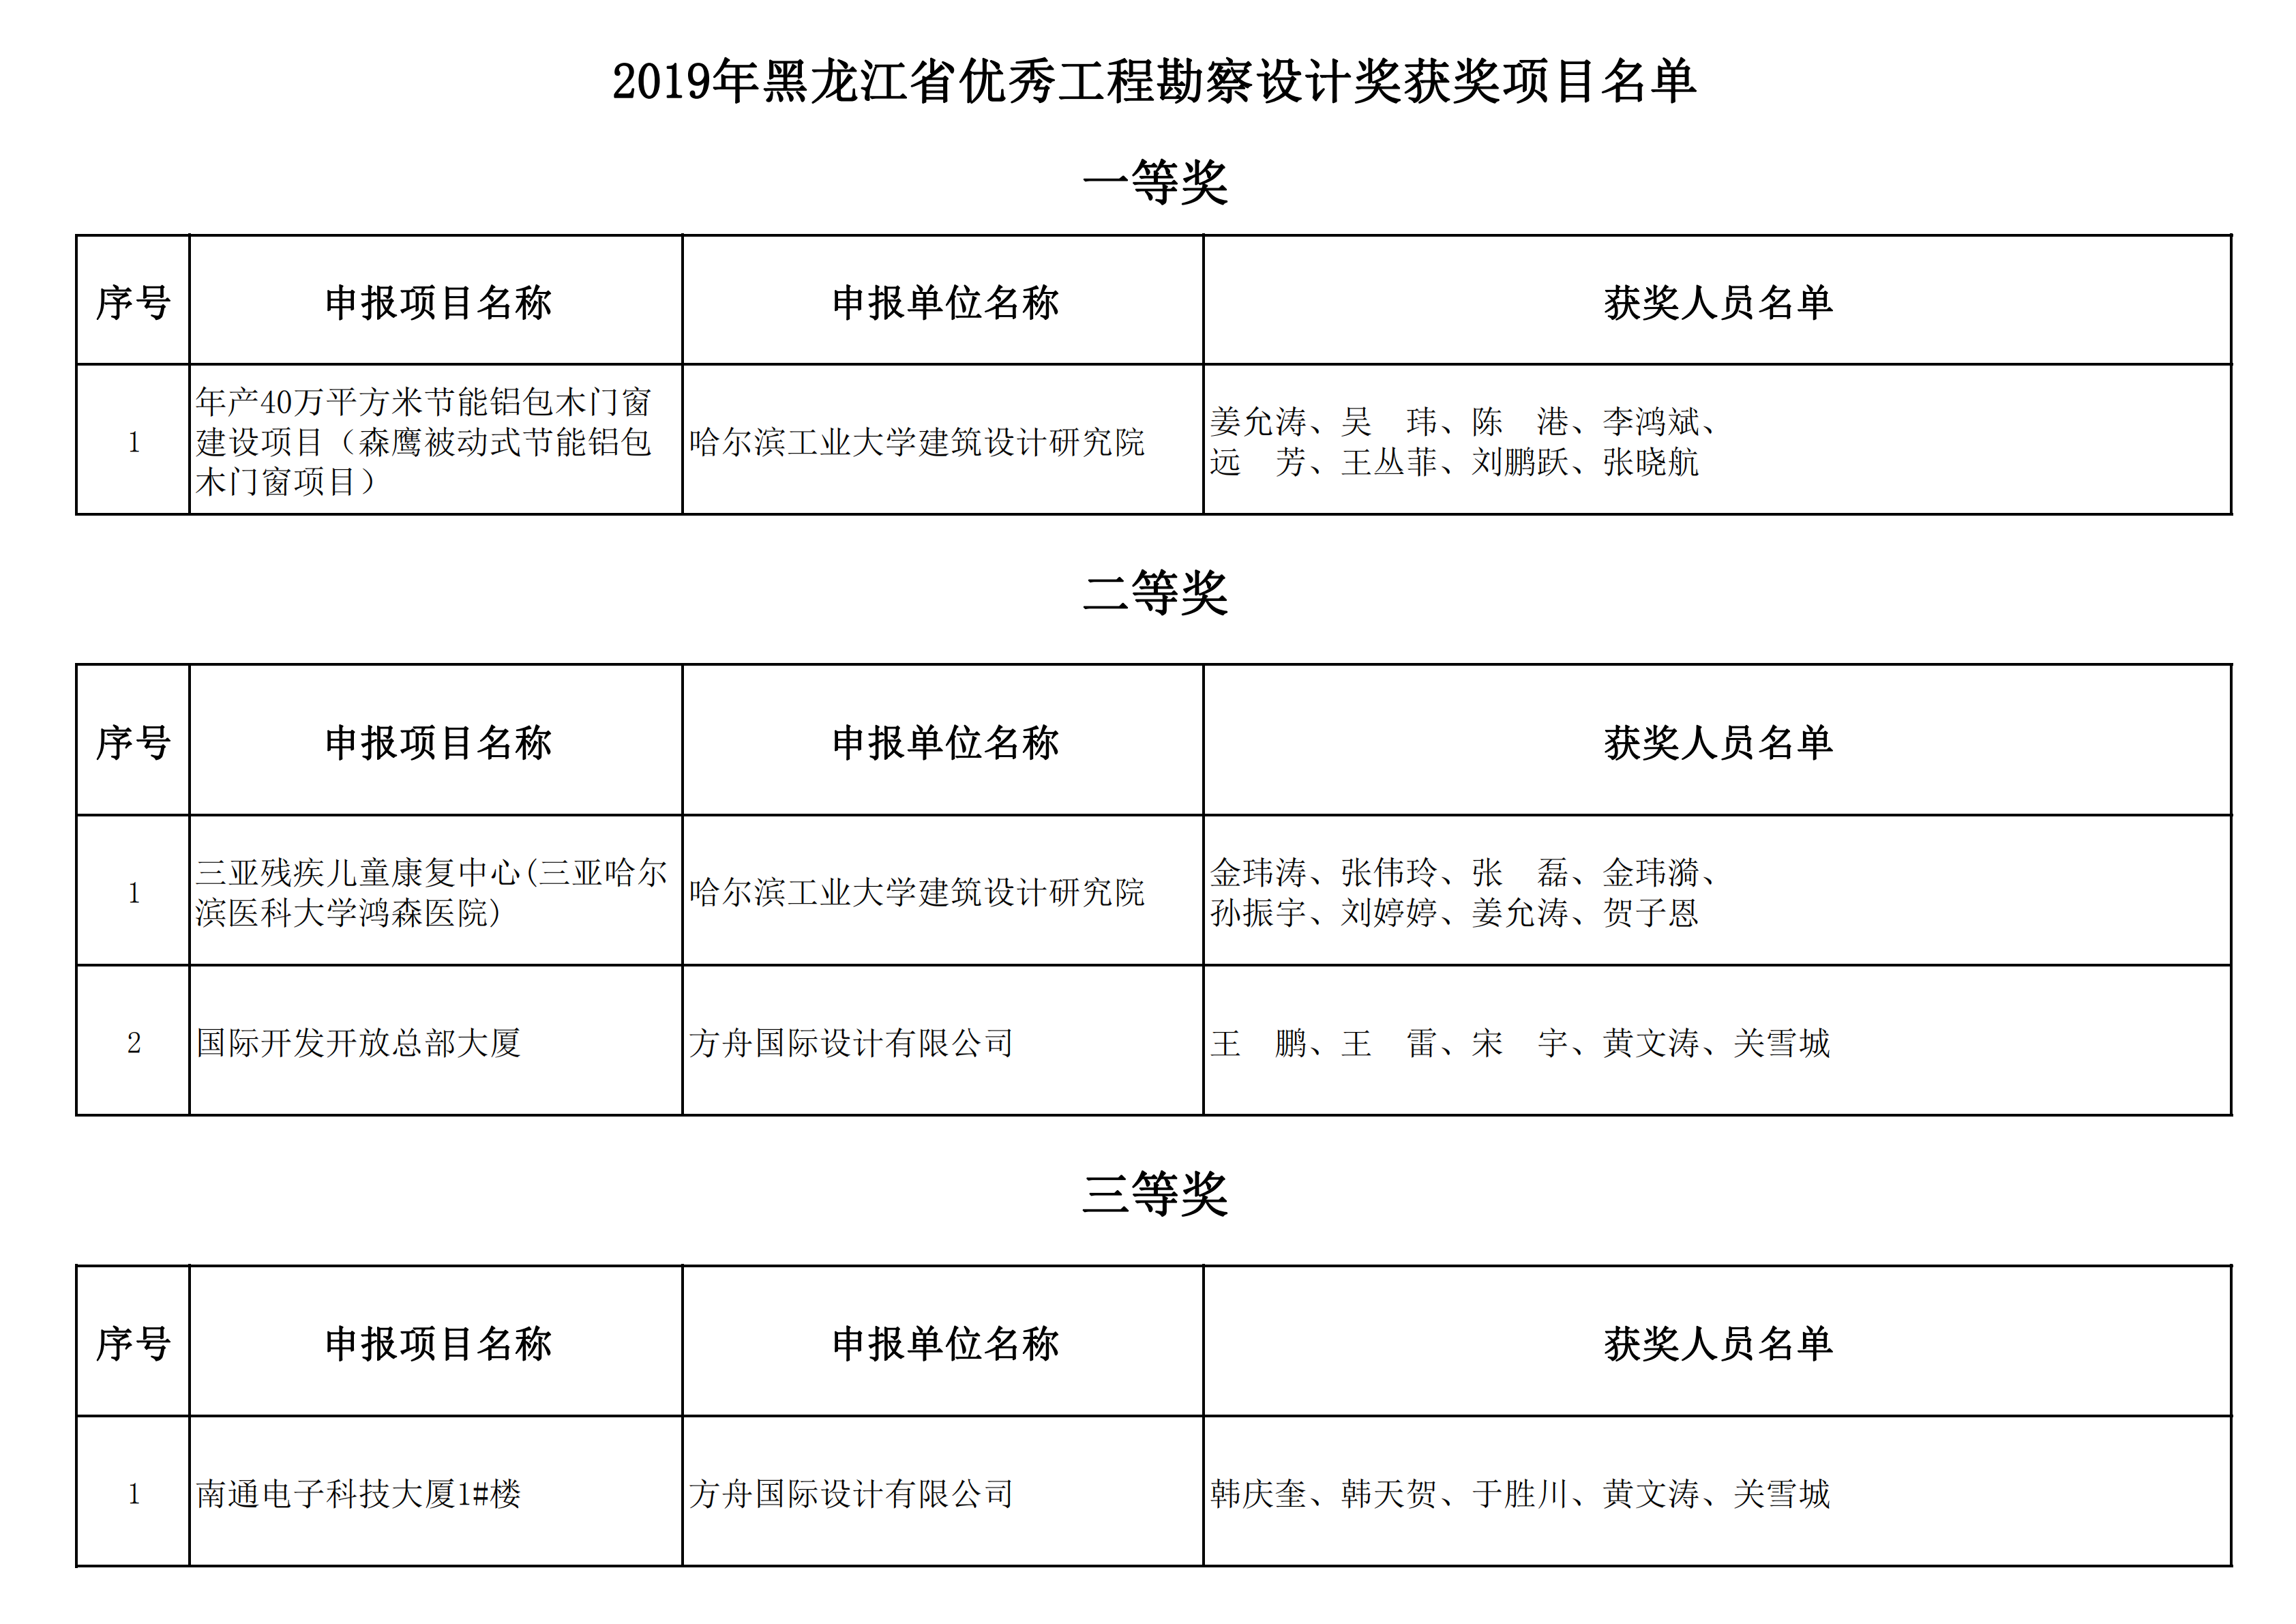 2019年黑龙江省优秀工程勘察设计奖获奖项目名单_06.png